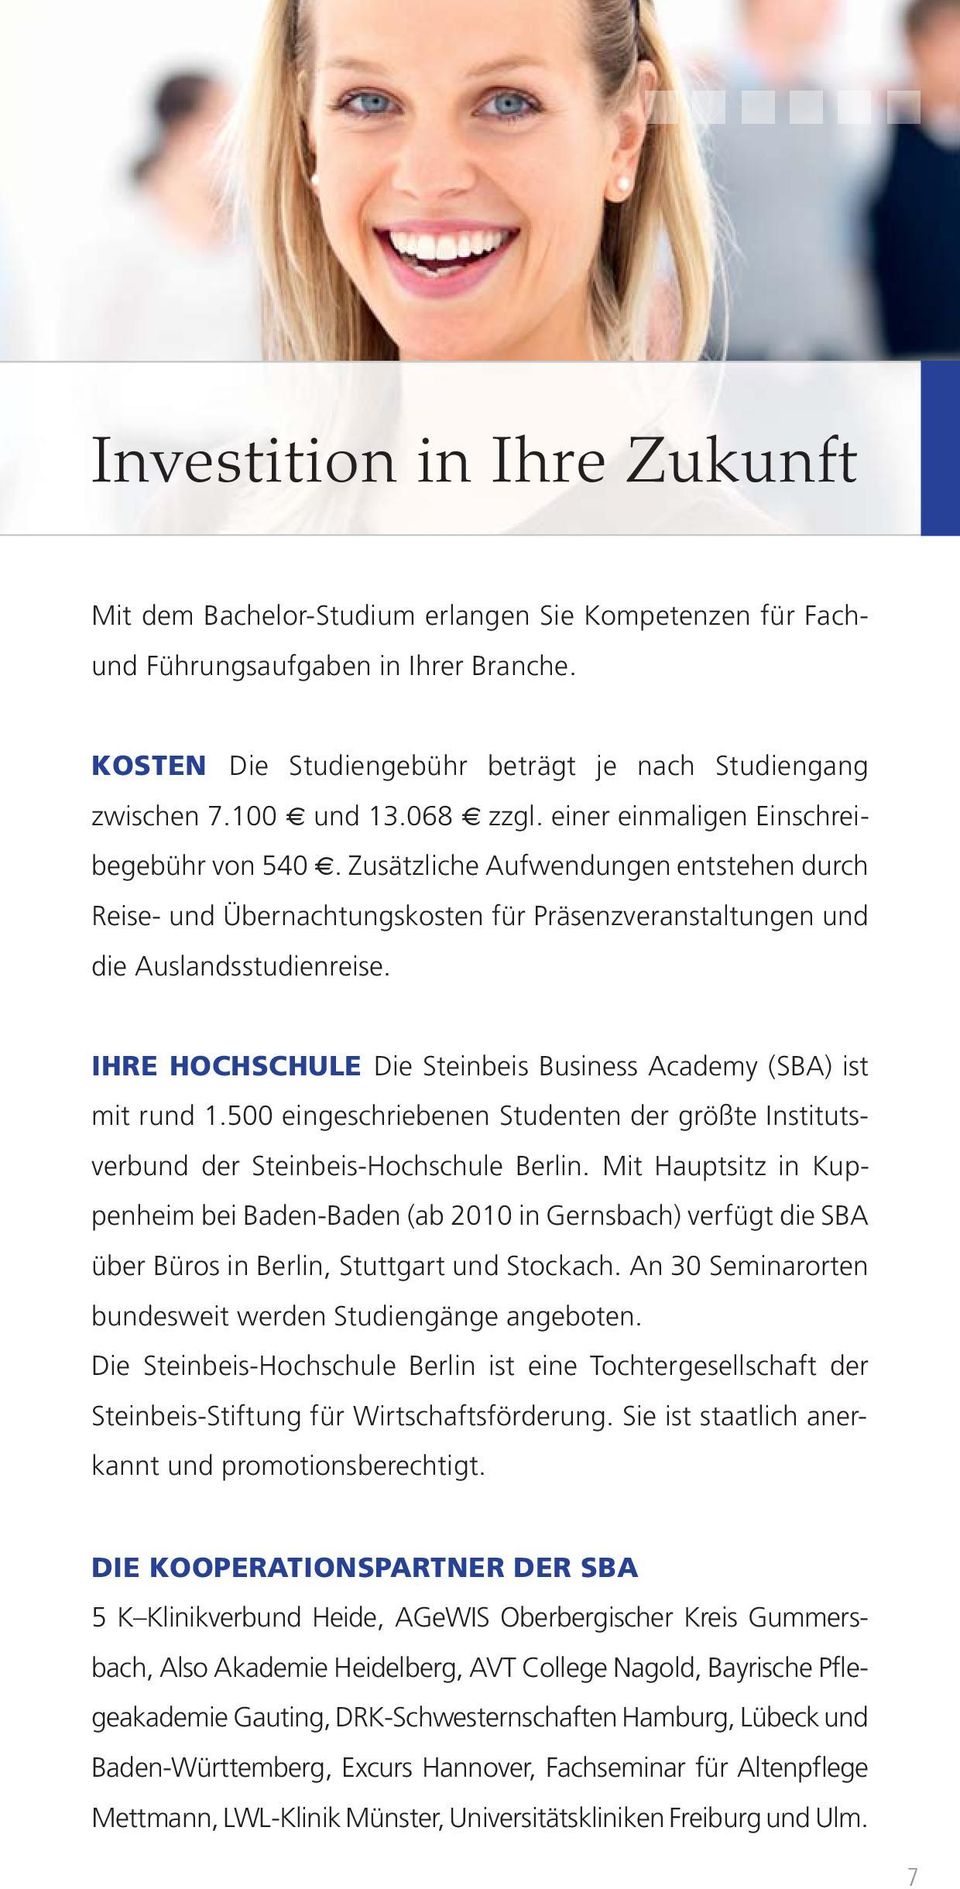 IHRE HOCHSCHULE Die Steinbeis Business Academy (SBA) ist mit rund 1.500 eingeschriebenen Studenten der größte Institutsverbund der Steinbeis-Hochschule Berlin.